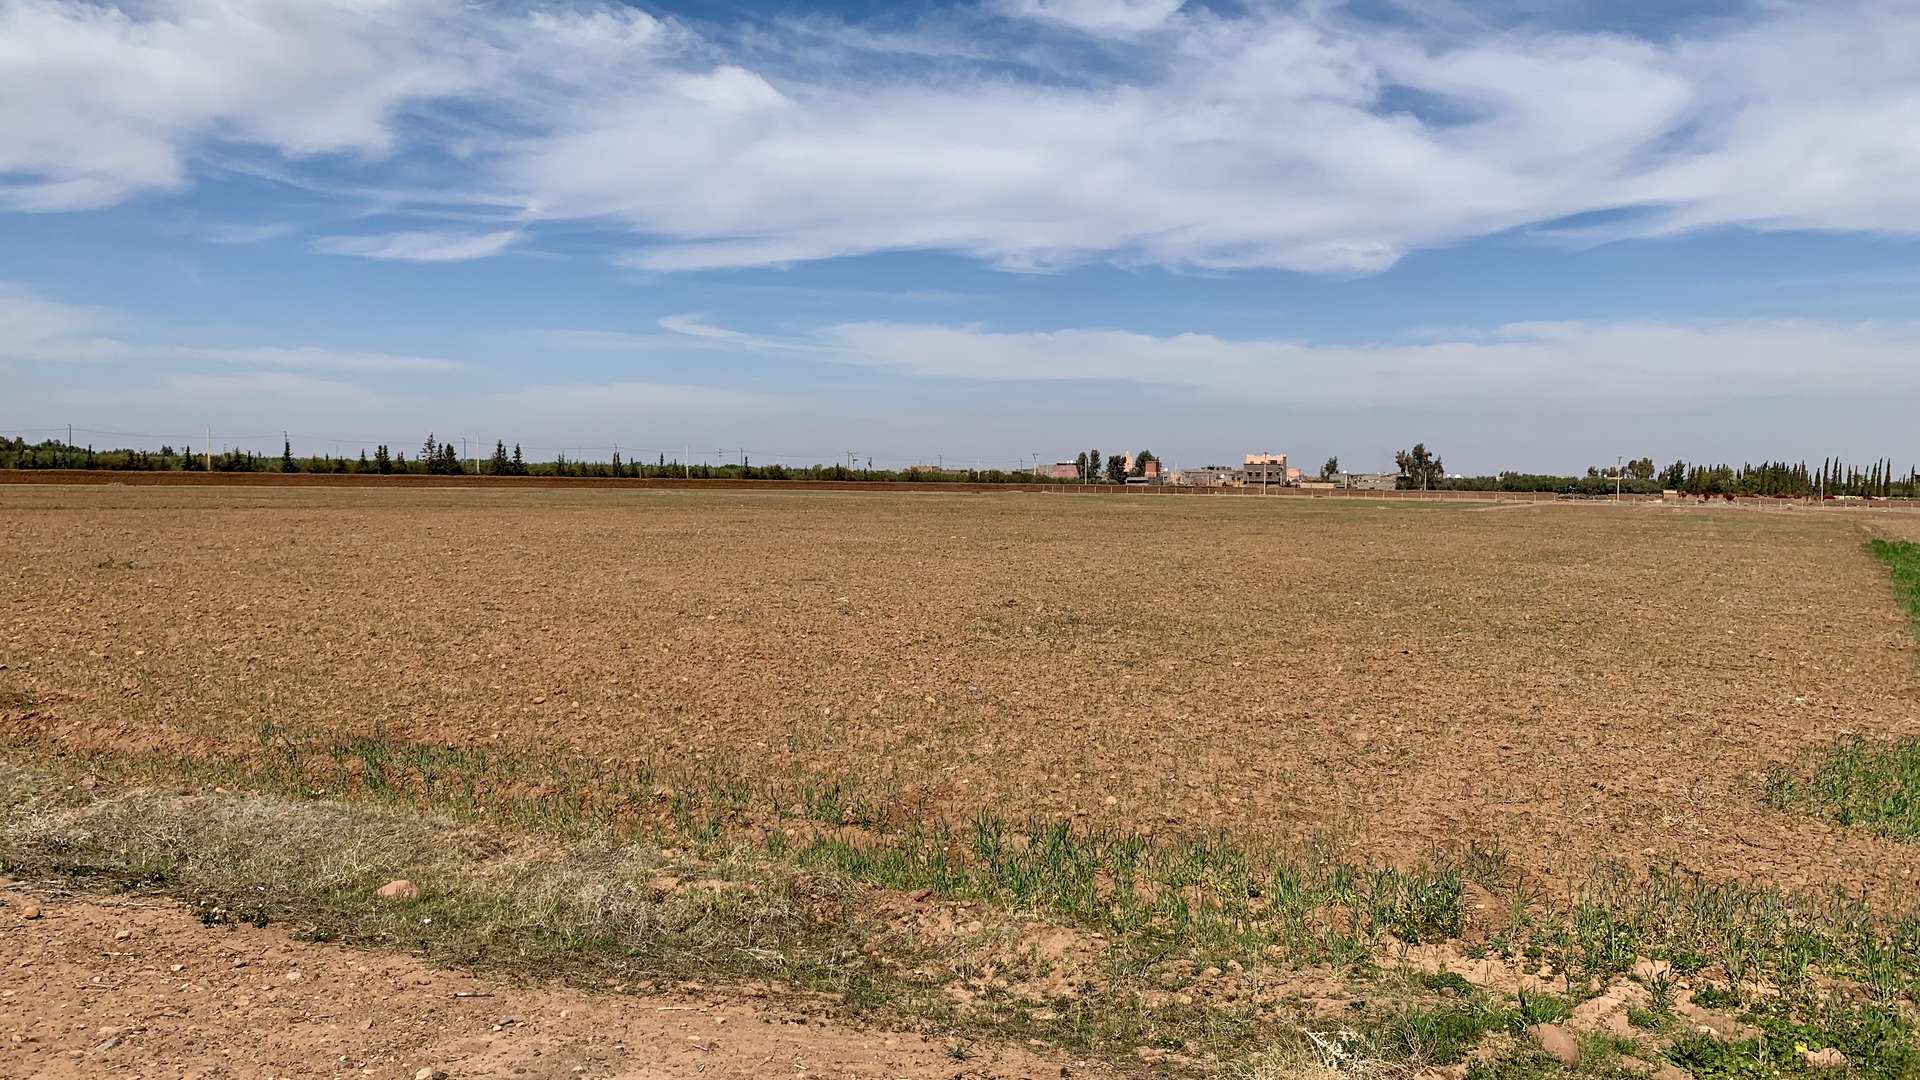 Vente,Terrains & Fermes,Lots de terrain d'1 Ha titrés et bien situés sur la route de l'Ourika ,Marrakech,Route de l'Ourika